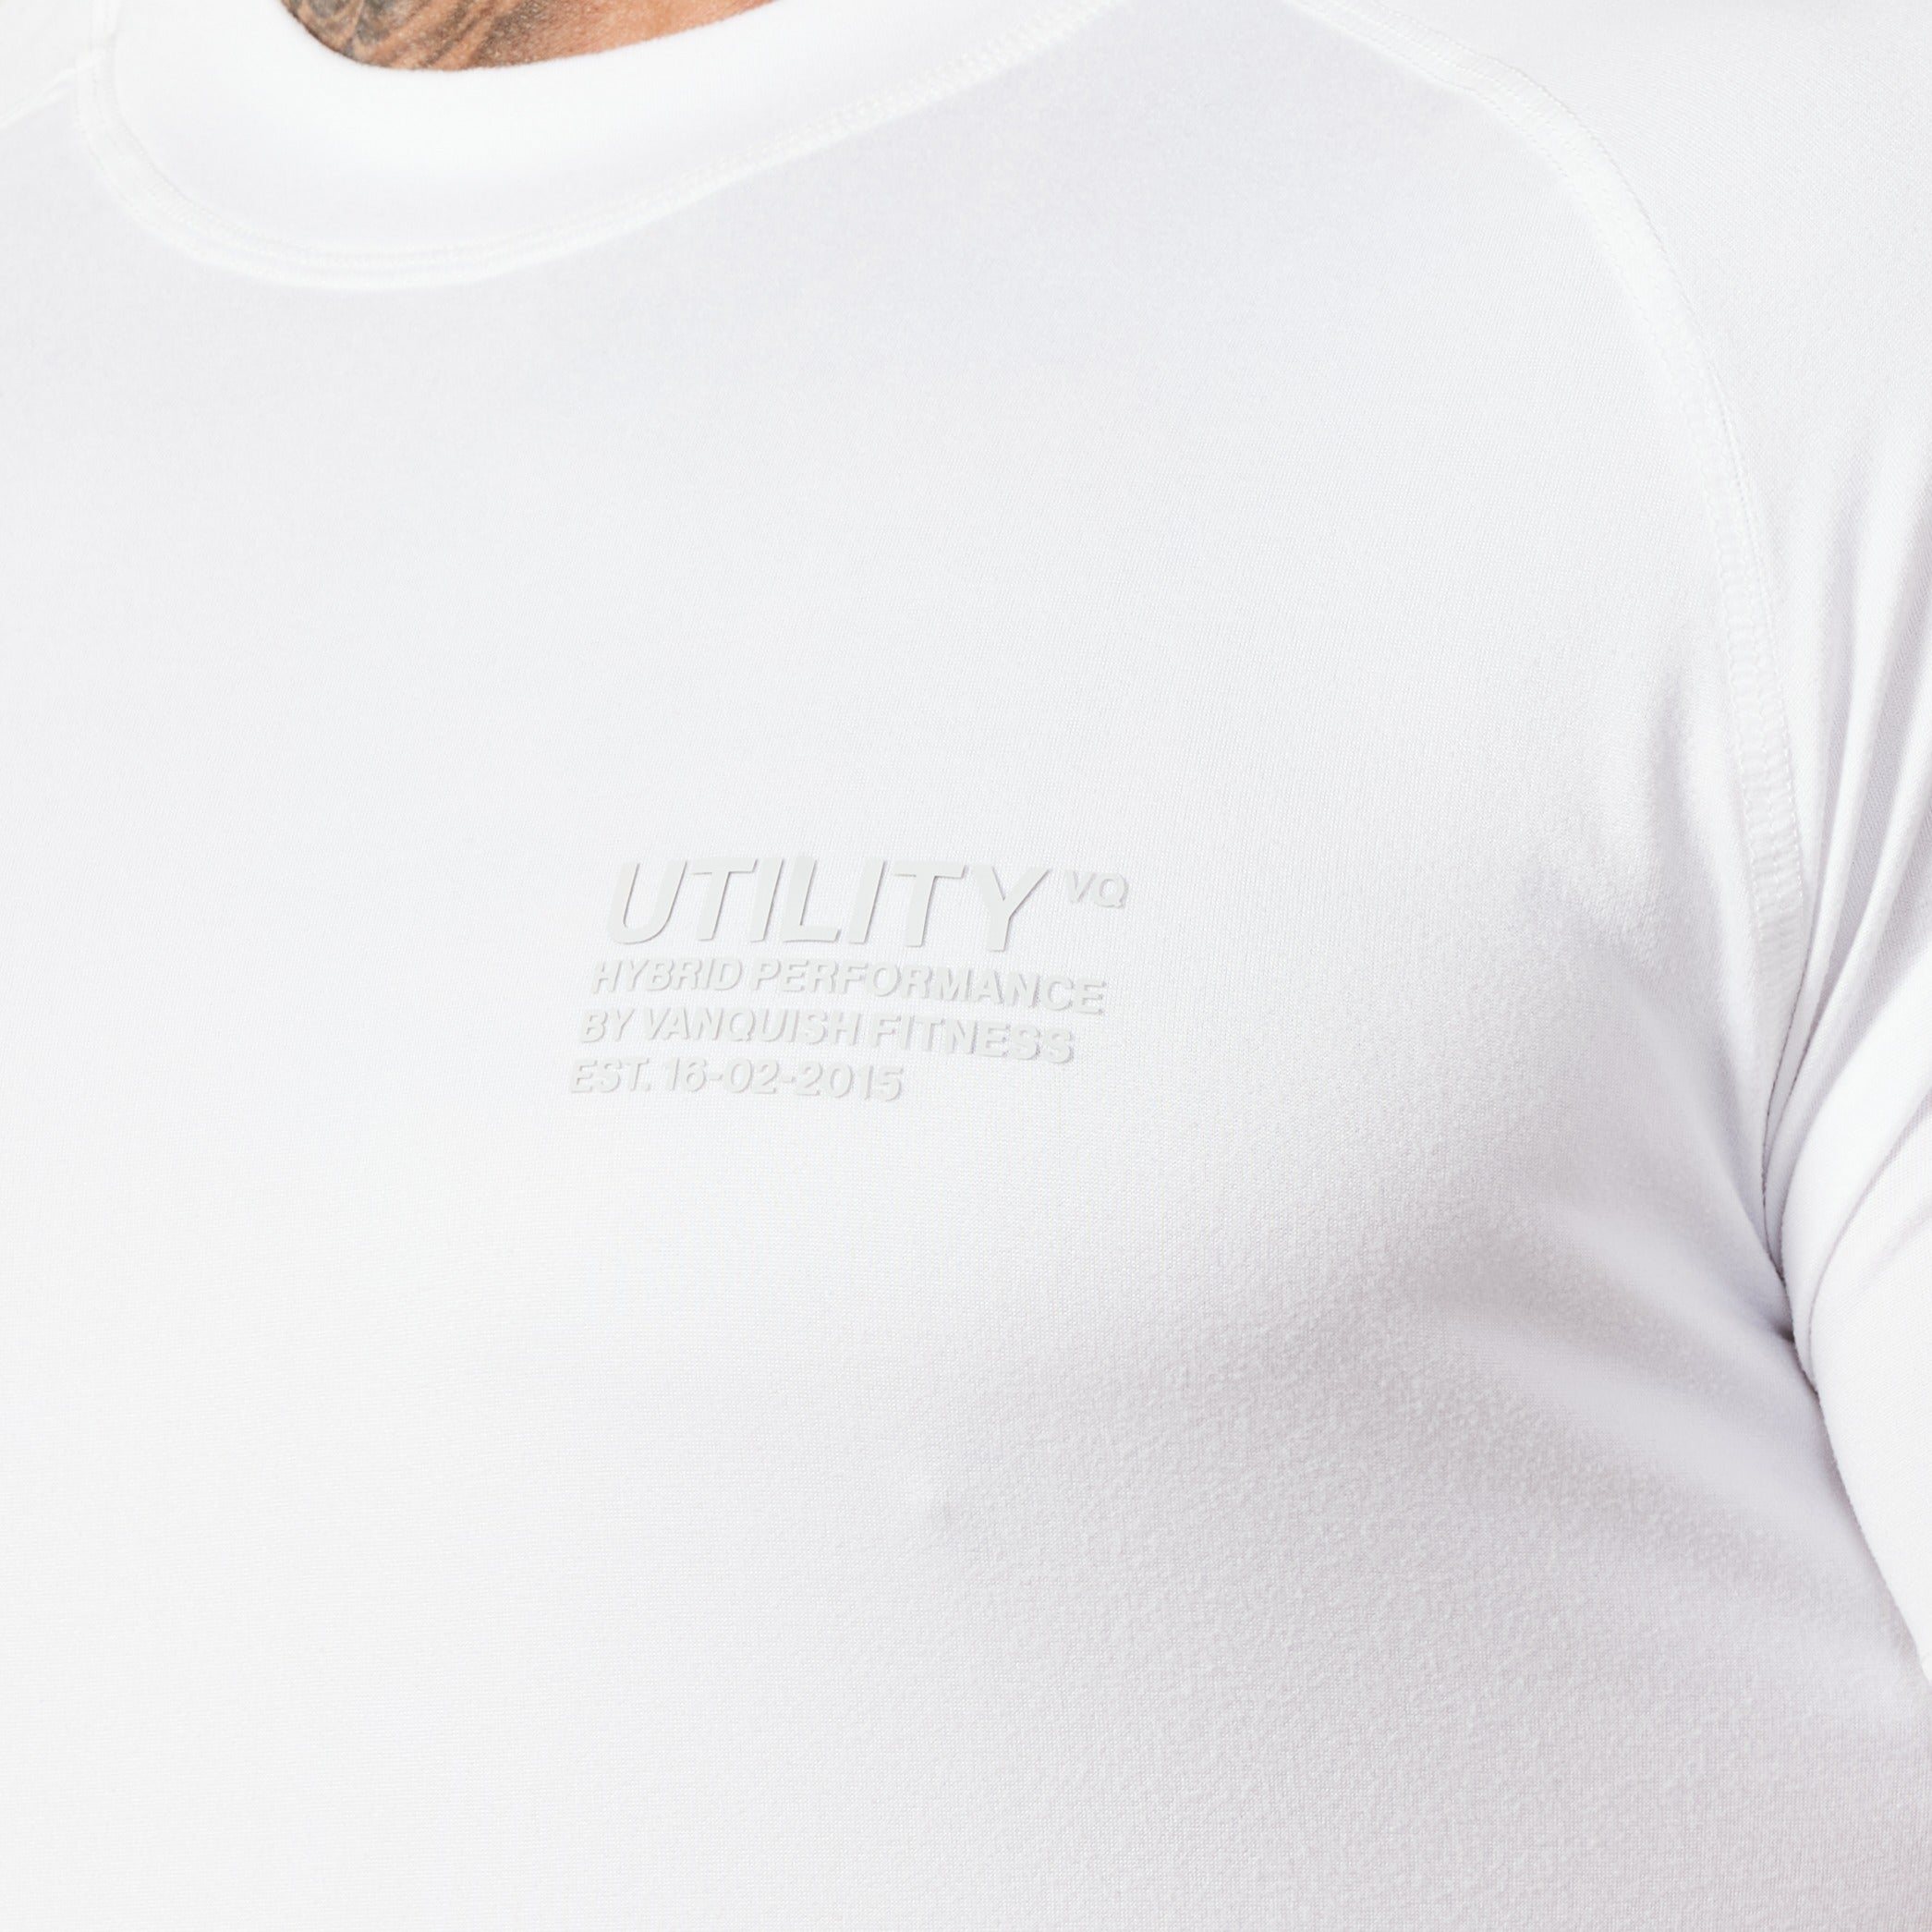 Vanquish Utility White T Shirt